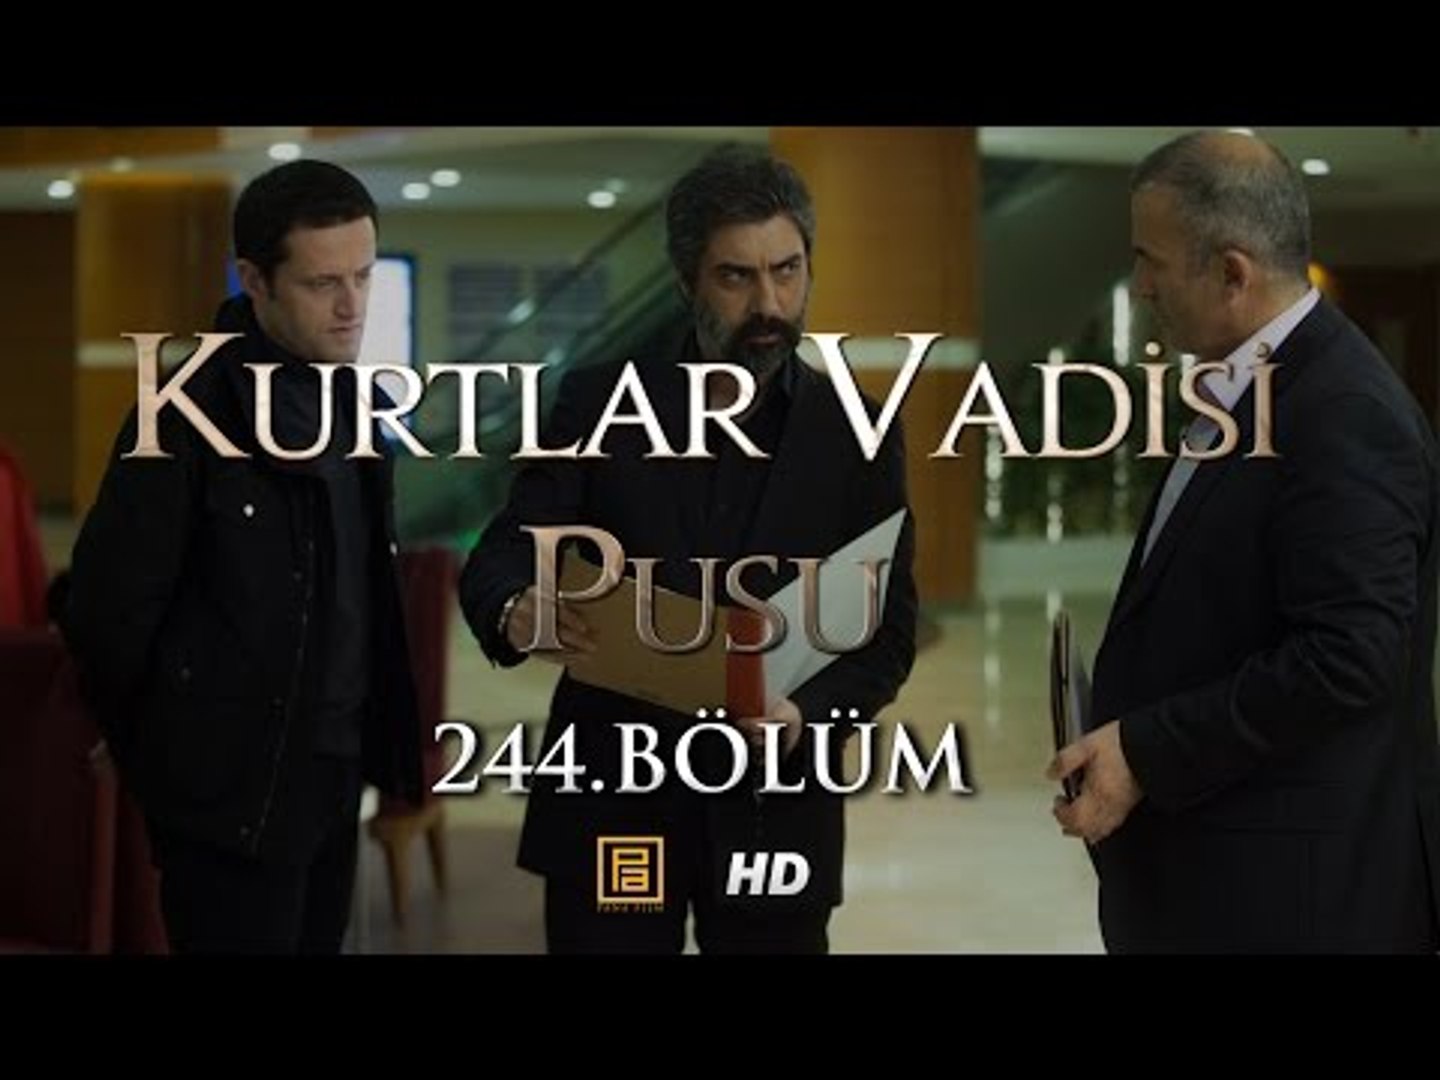 Kurtlar Vadisi Pusu 244. Bölüm HD | English Subtitles | ترجمة إلى العربية -  Dailymotion Video